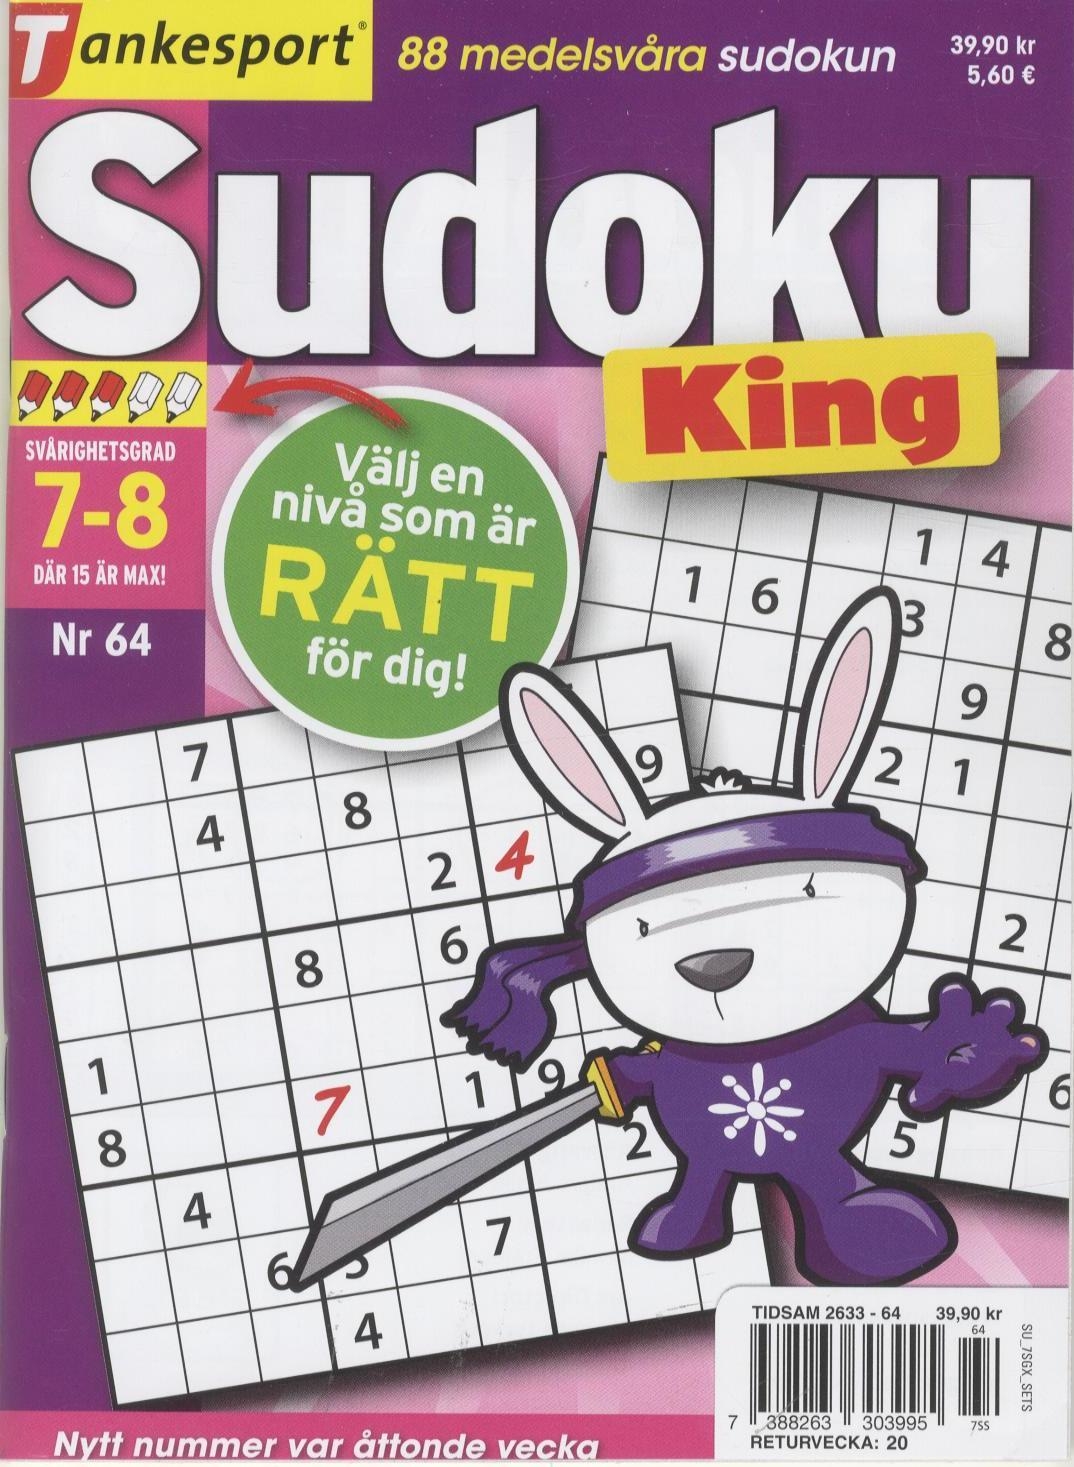 TS Sudoku King